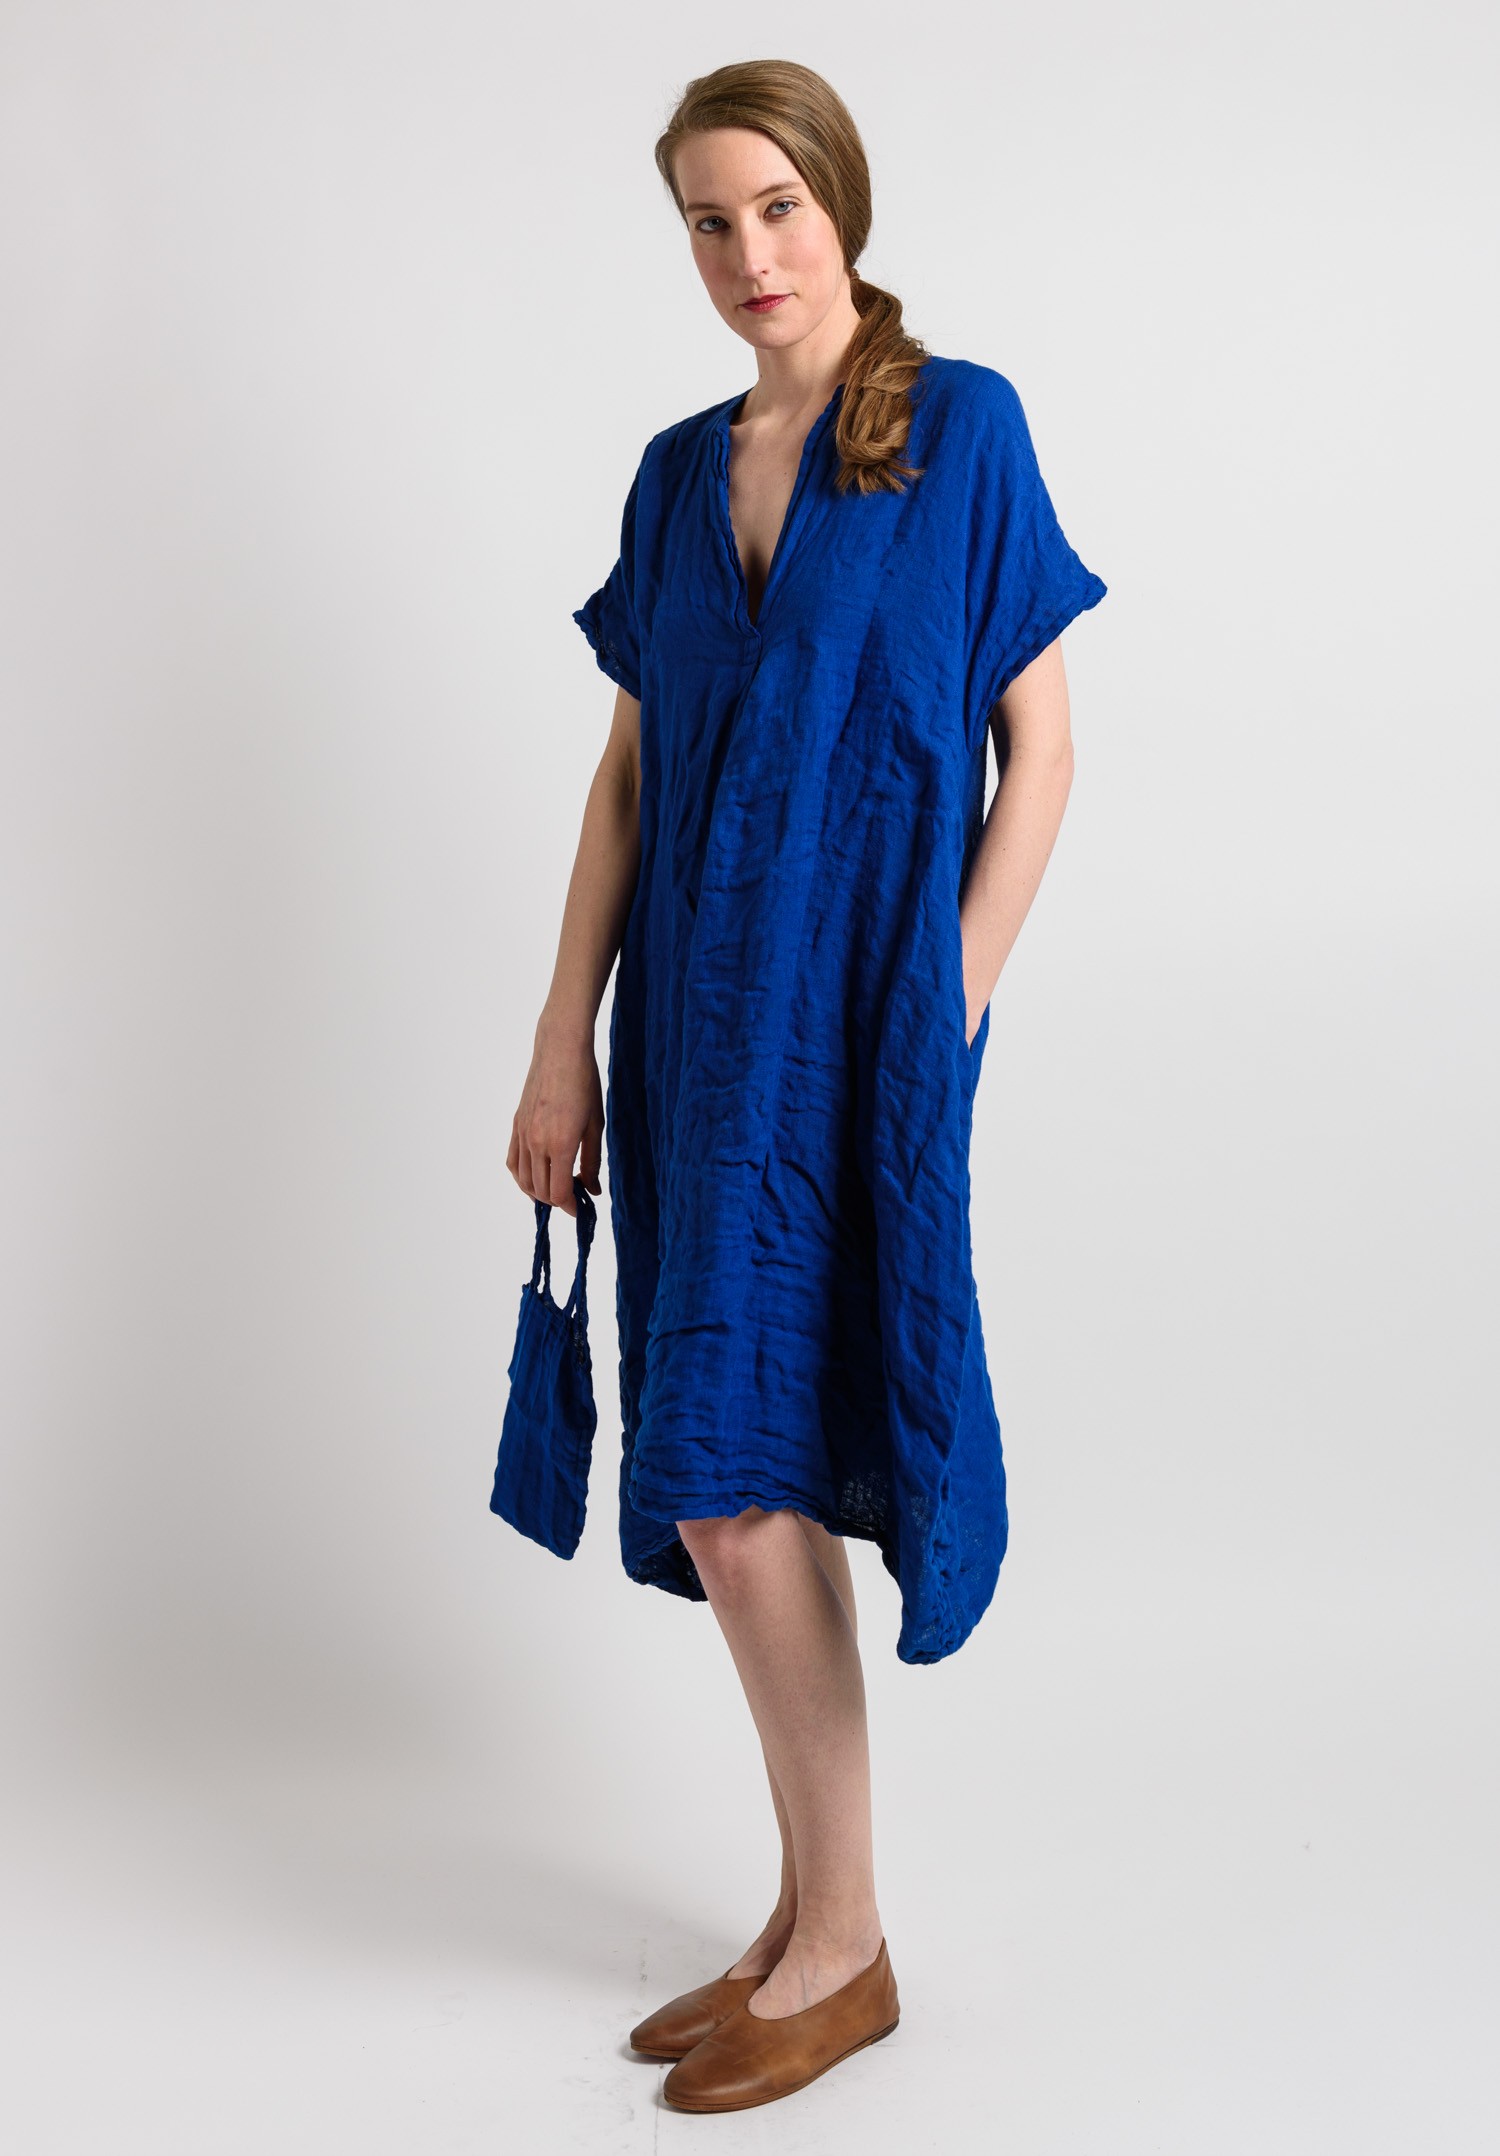 Daniela Gregis Oversized Dress in Blue | Santa Fe Dry Goods Trippen ...